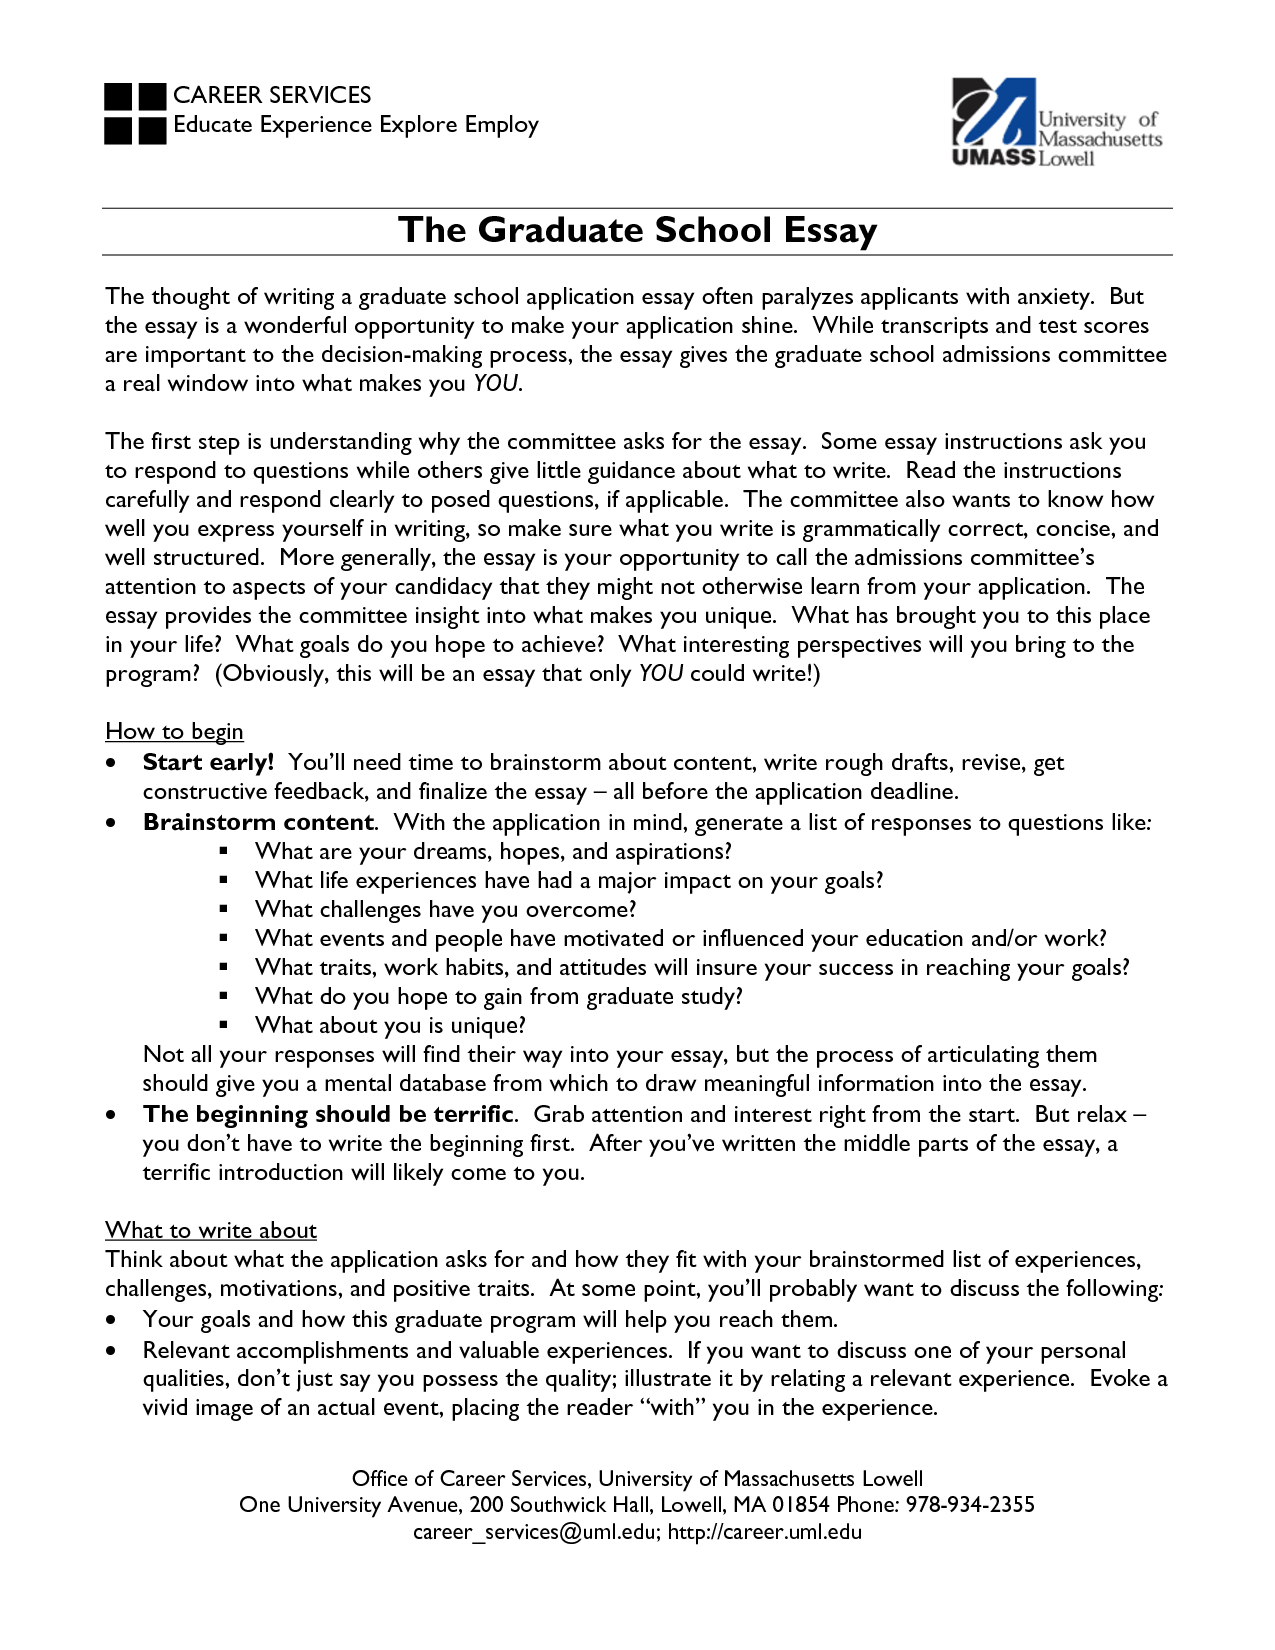 Graduate admissions essay education